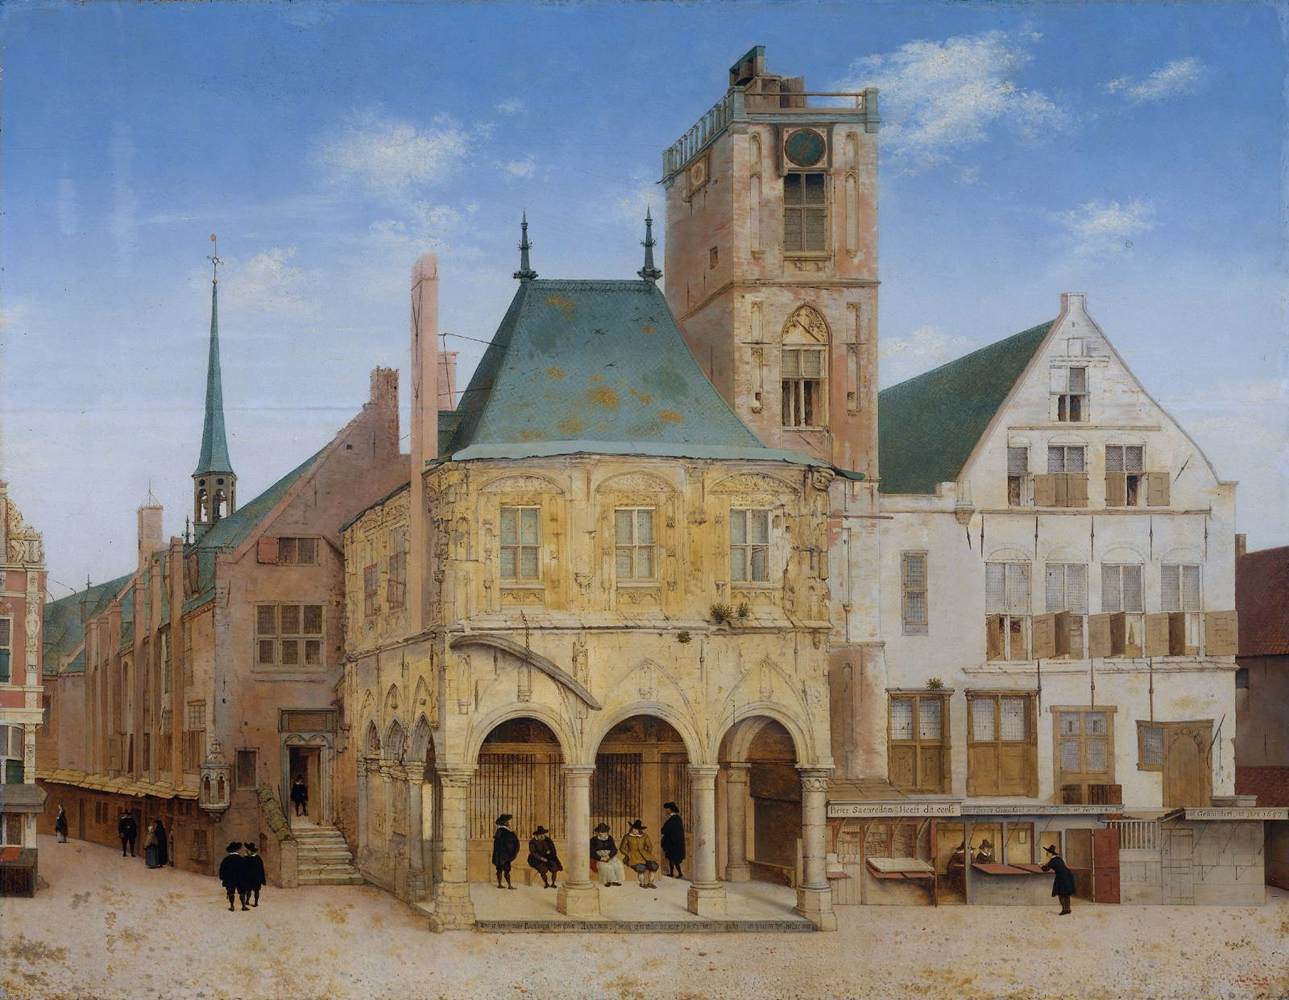 Il vecchio consiglio comunale di Amsterdam